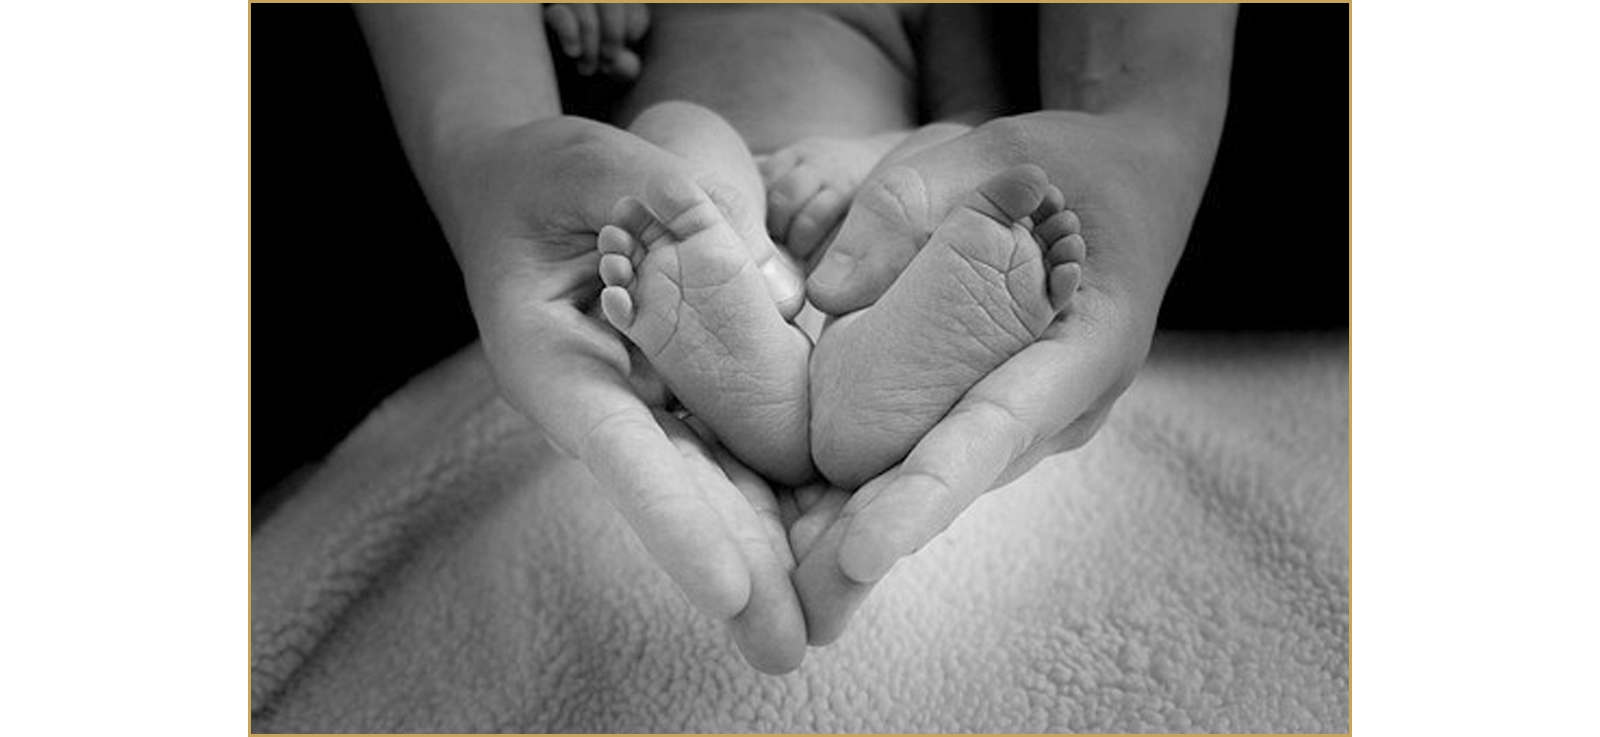 Erwachsenen-Hände und Baby-Füße verschlungen zu einer Herzform.